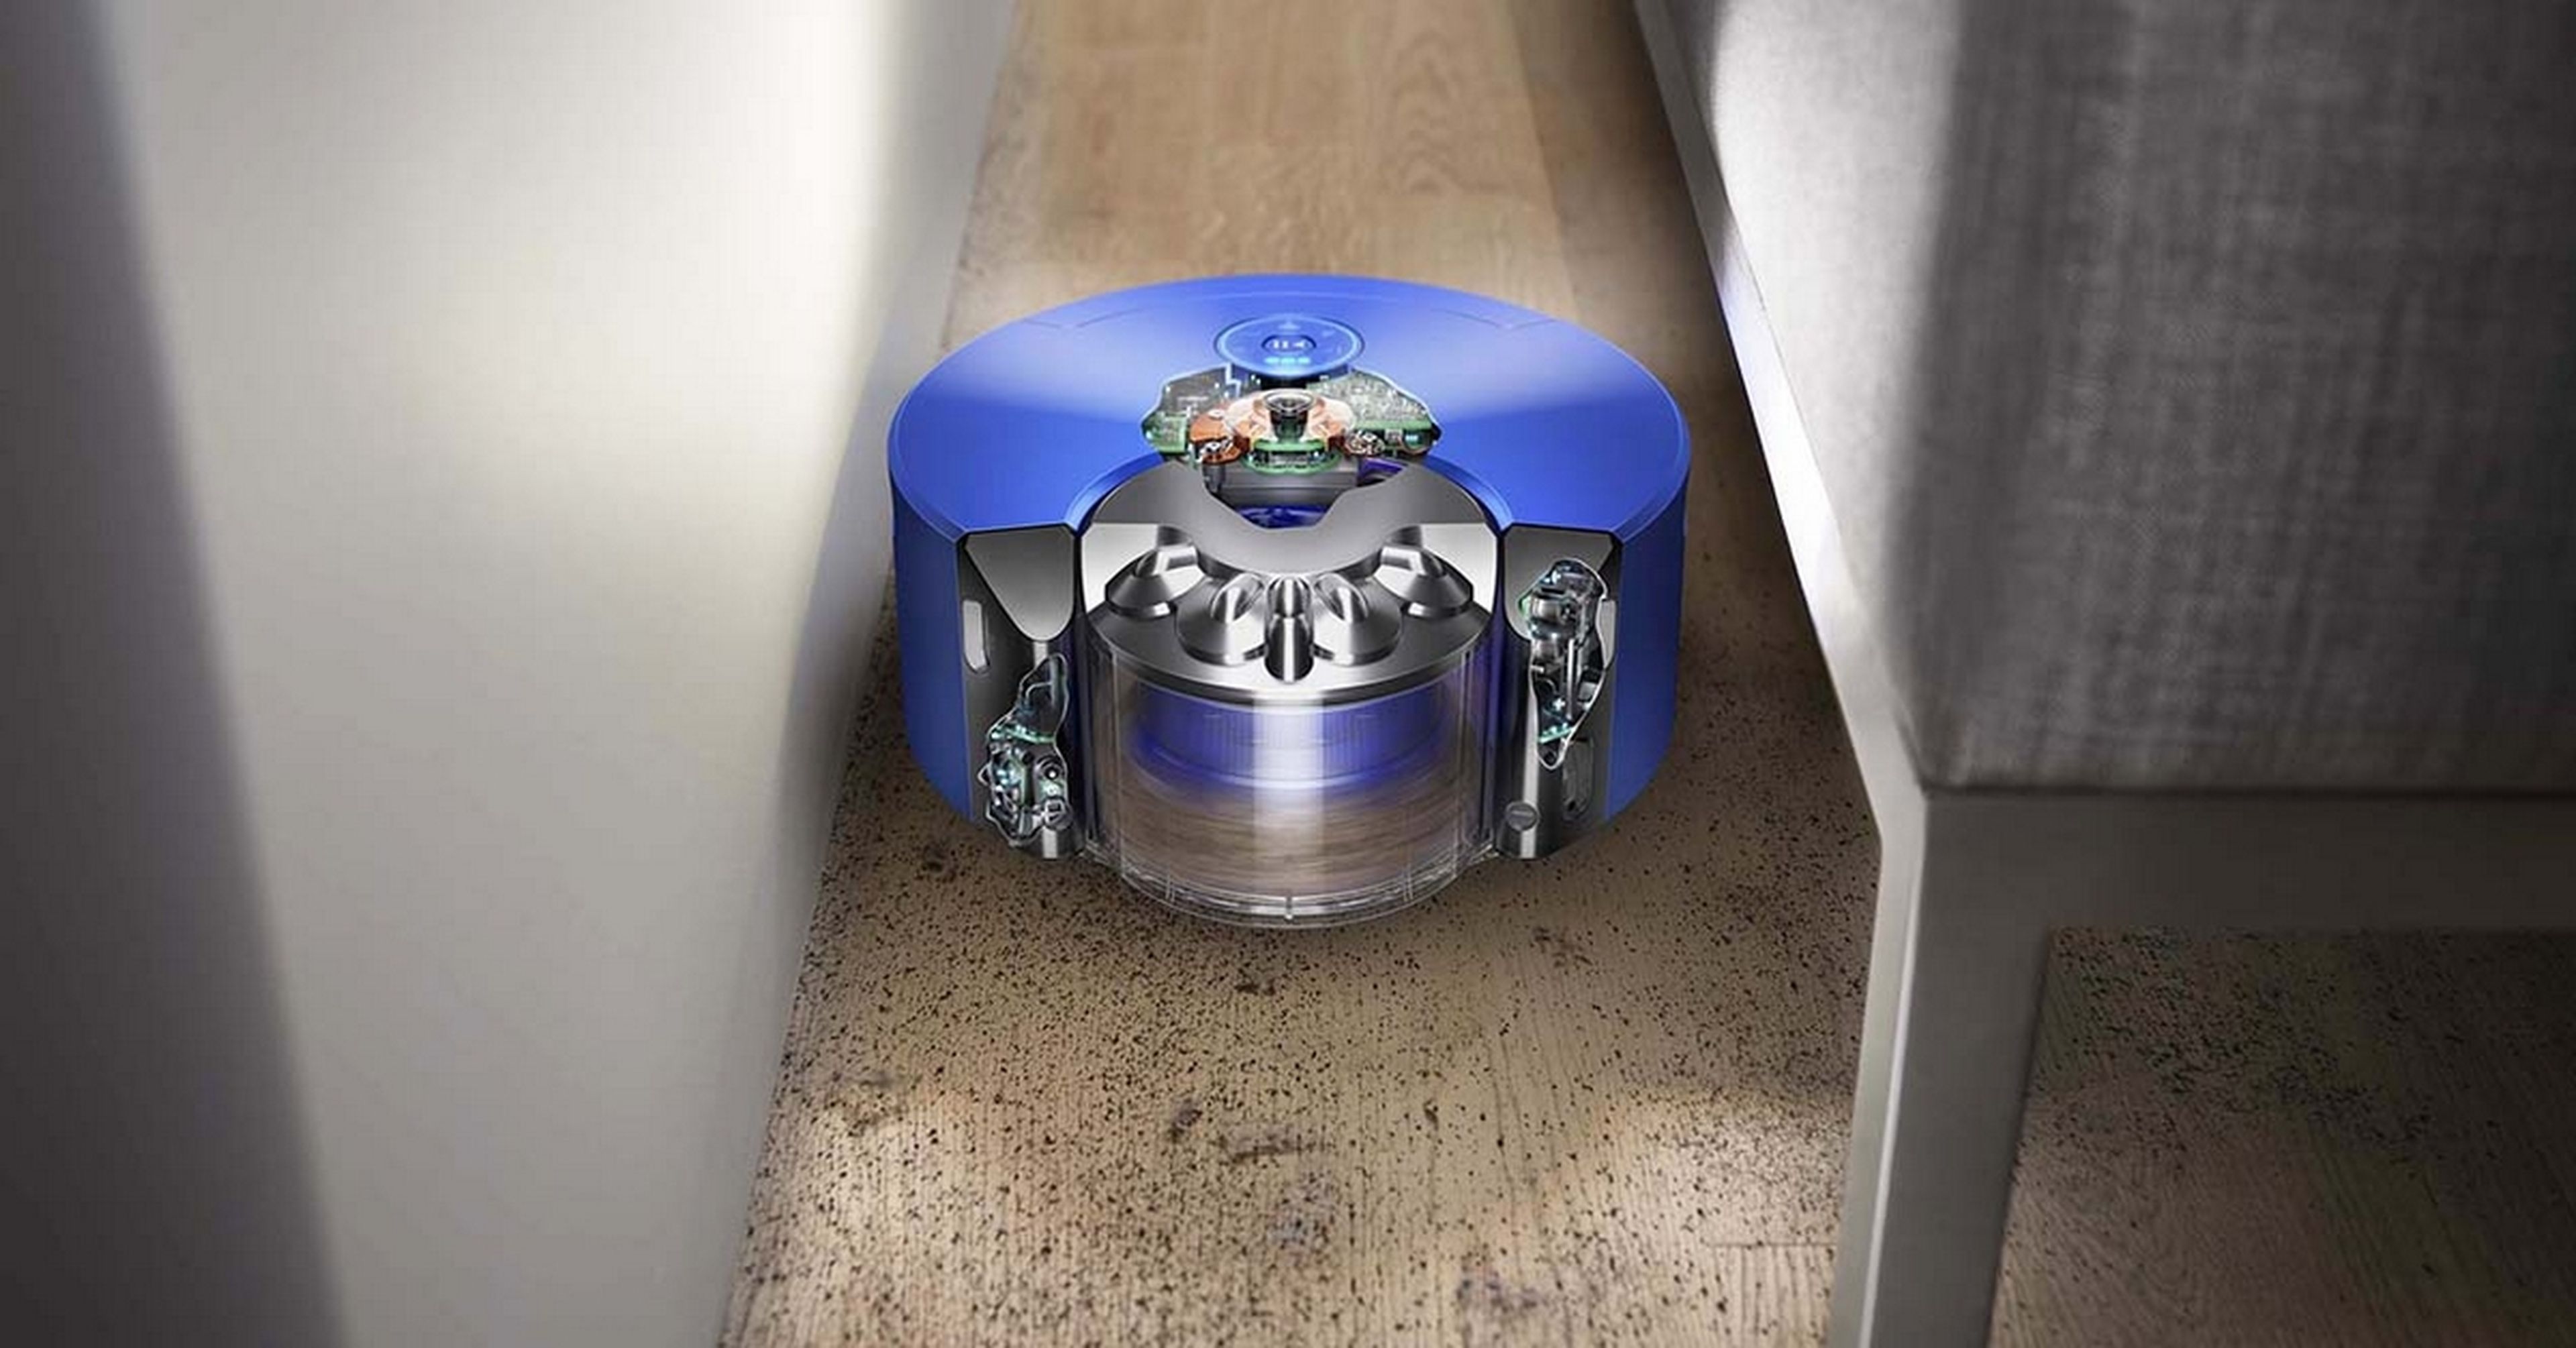 Así queda el robot aspirador Dyson 360 Heurist comparado con el catálogo de Roomba